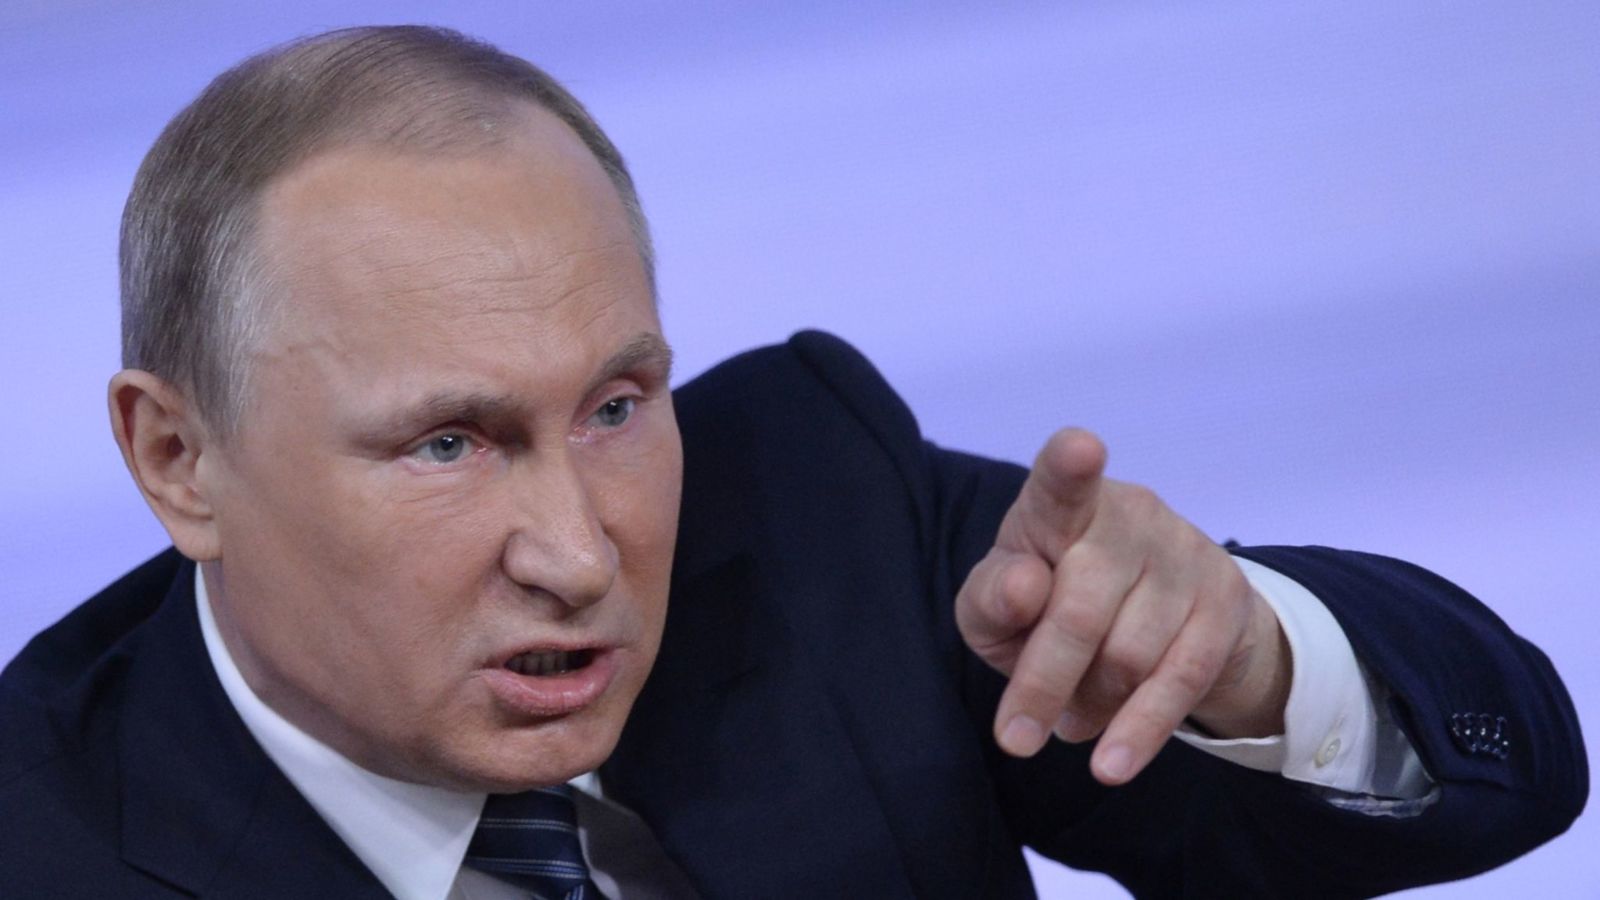   بوتين يحمل أمريكا مسئولية إطلاق شرارة سباق التسلح الجديد